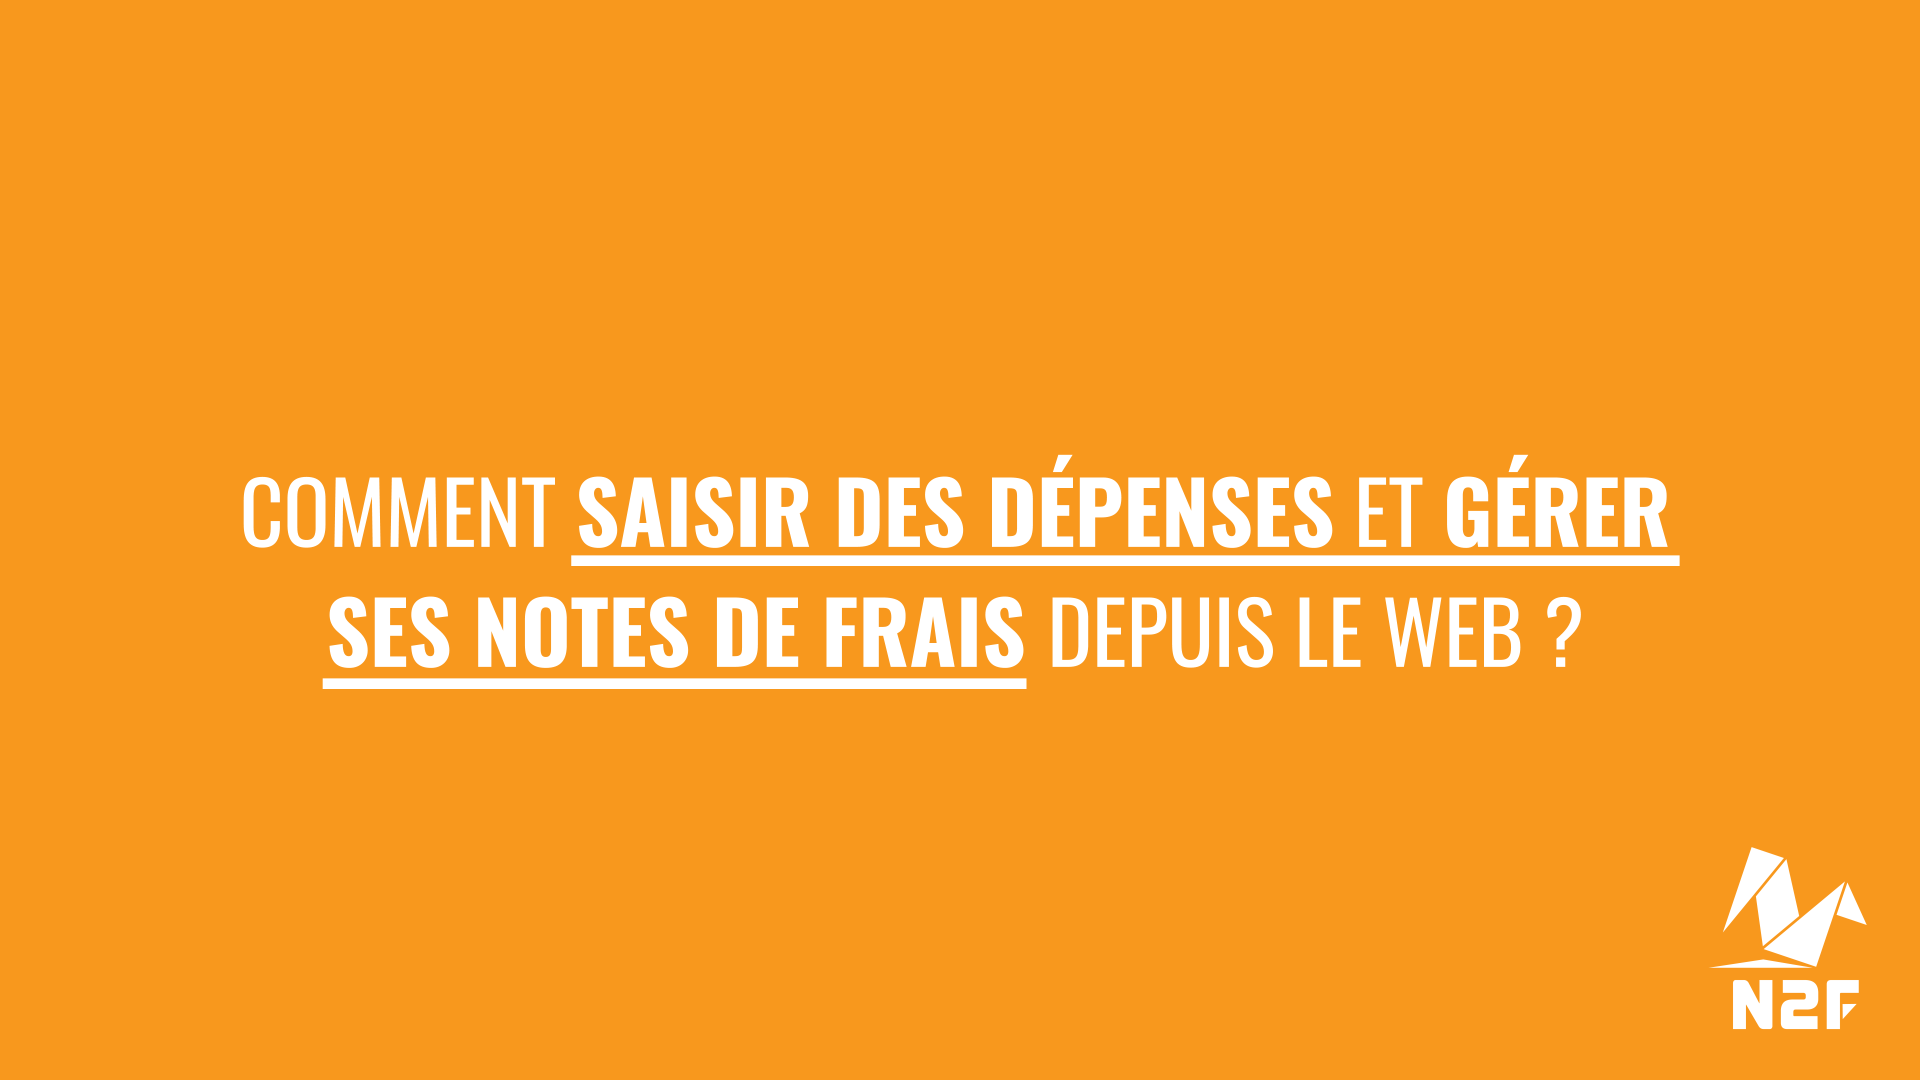 3 comment_saisir_depenses_gerer_notes_de_frais_web